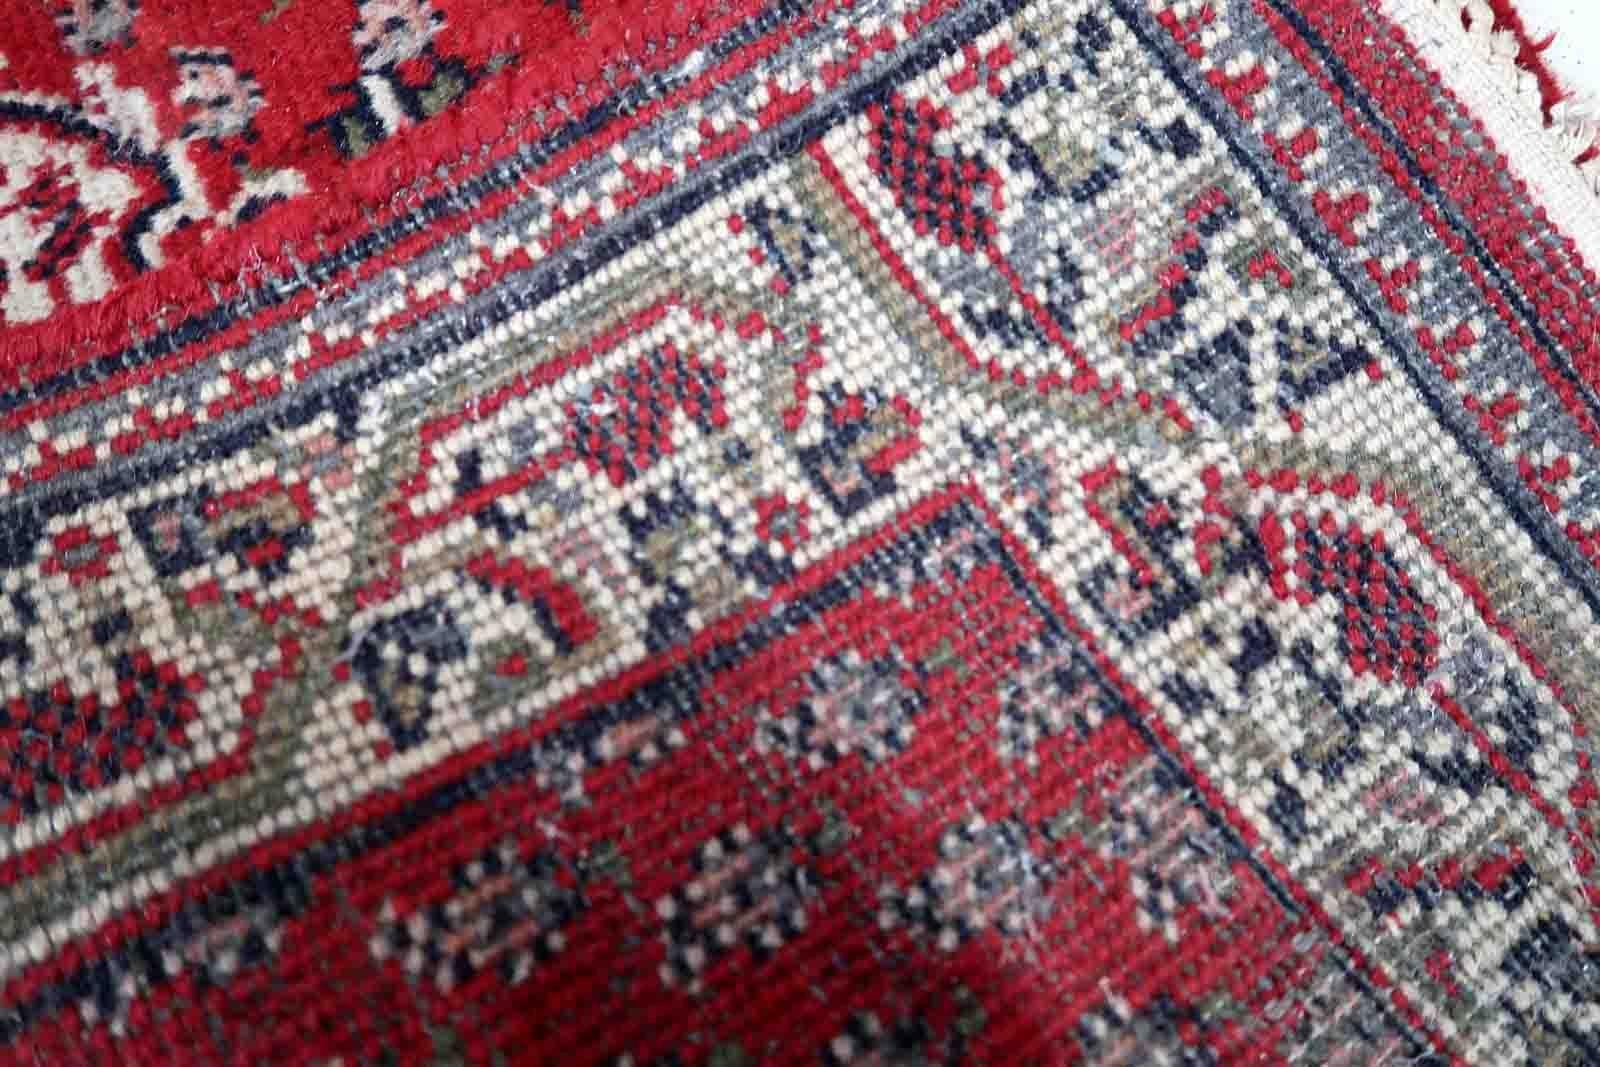 Handgefertigter indischer Seranad-Teppich in traditionellem Design mit Medaillon und roter Wolle. Der Teppich stammt aus dem Ende des 20. Jahrhunderts und ist im Originalzustand, er hat einen niedrigen Flor.

-Zustand: original, niedriger